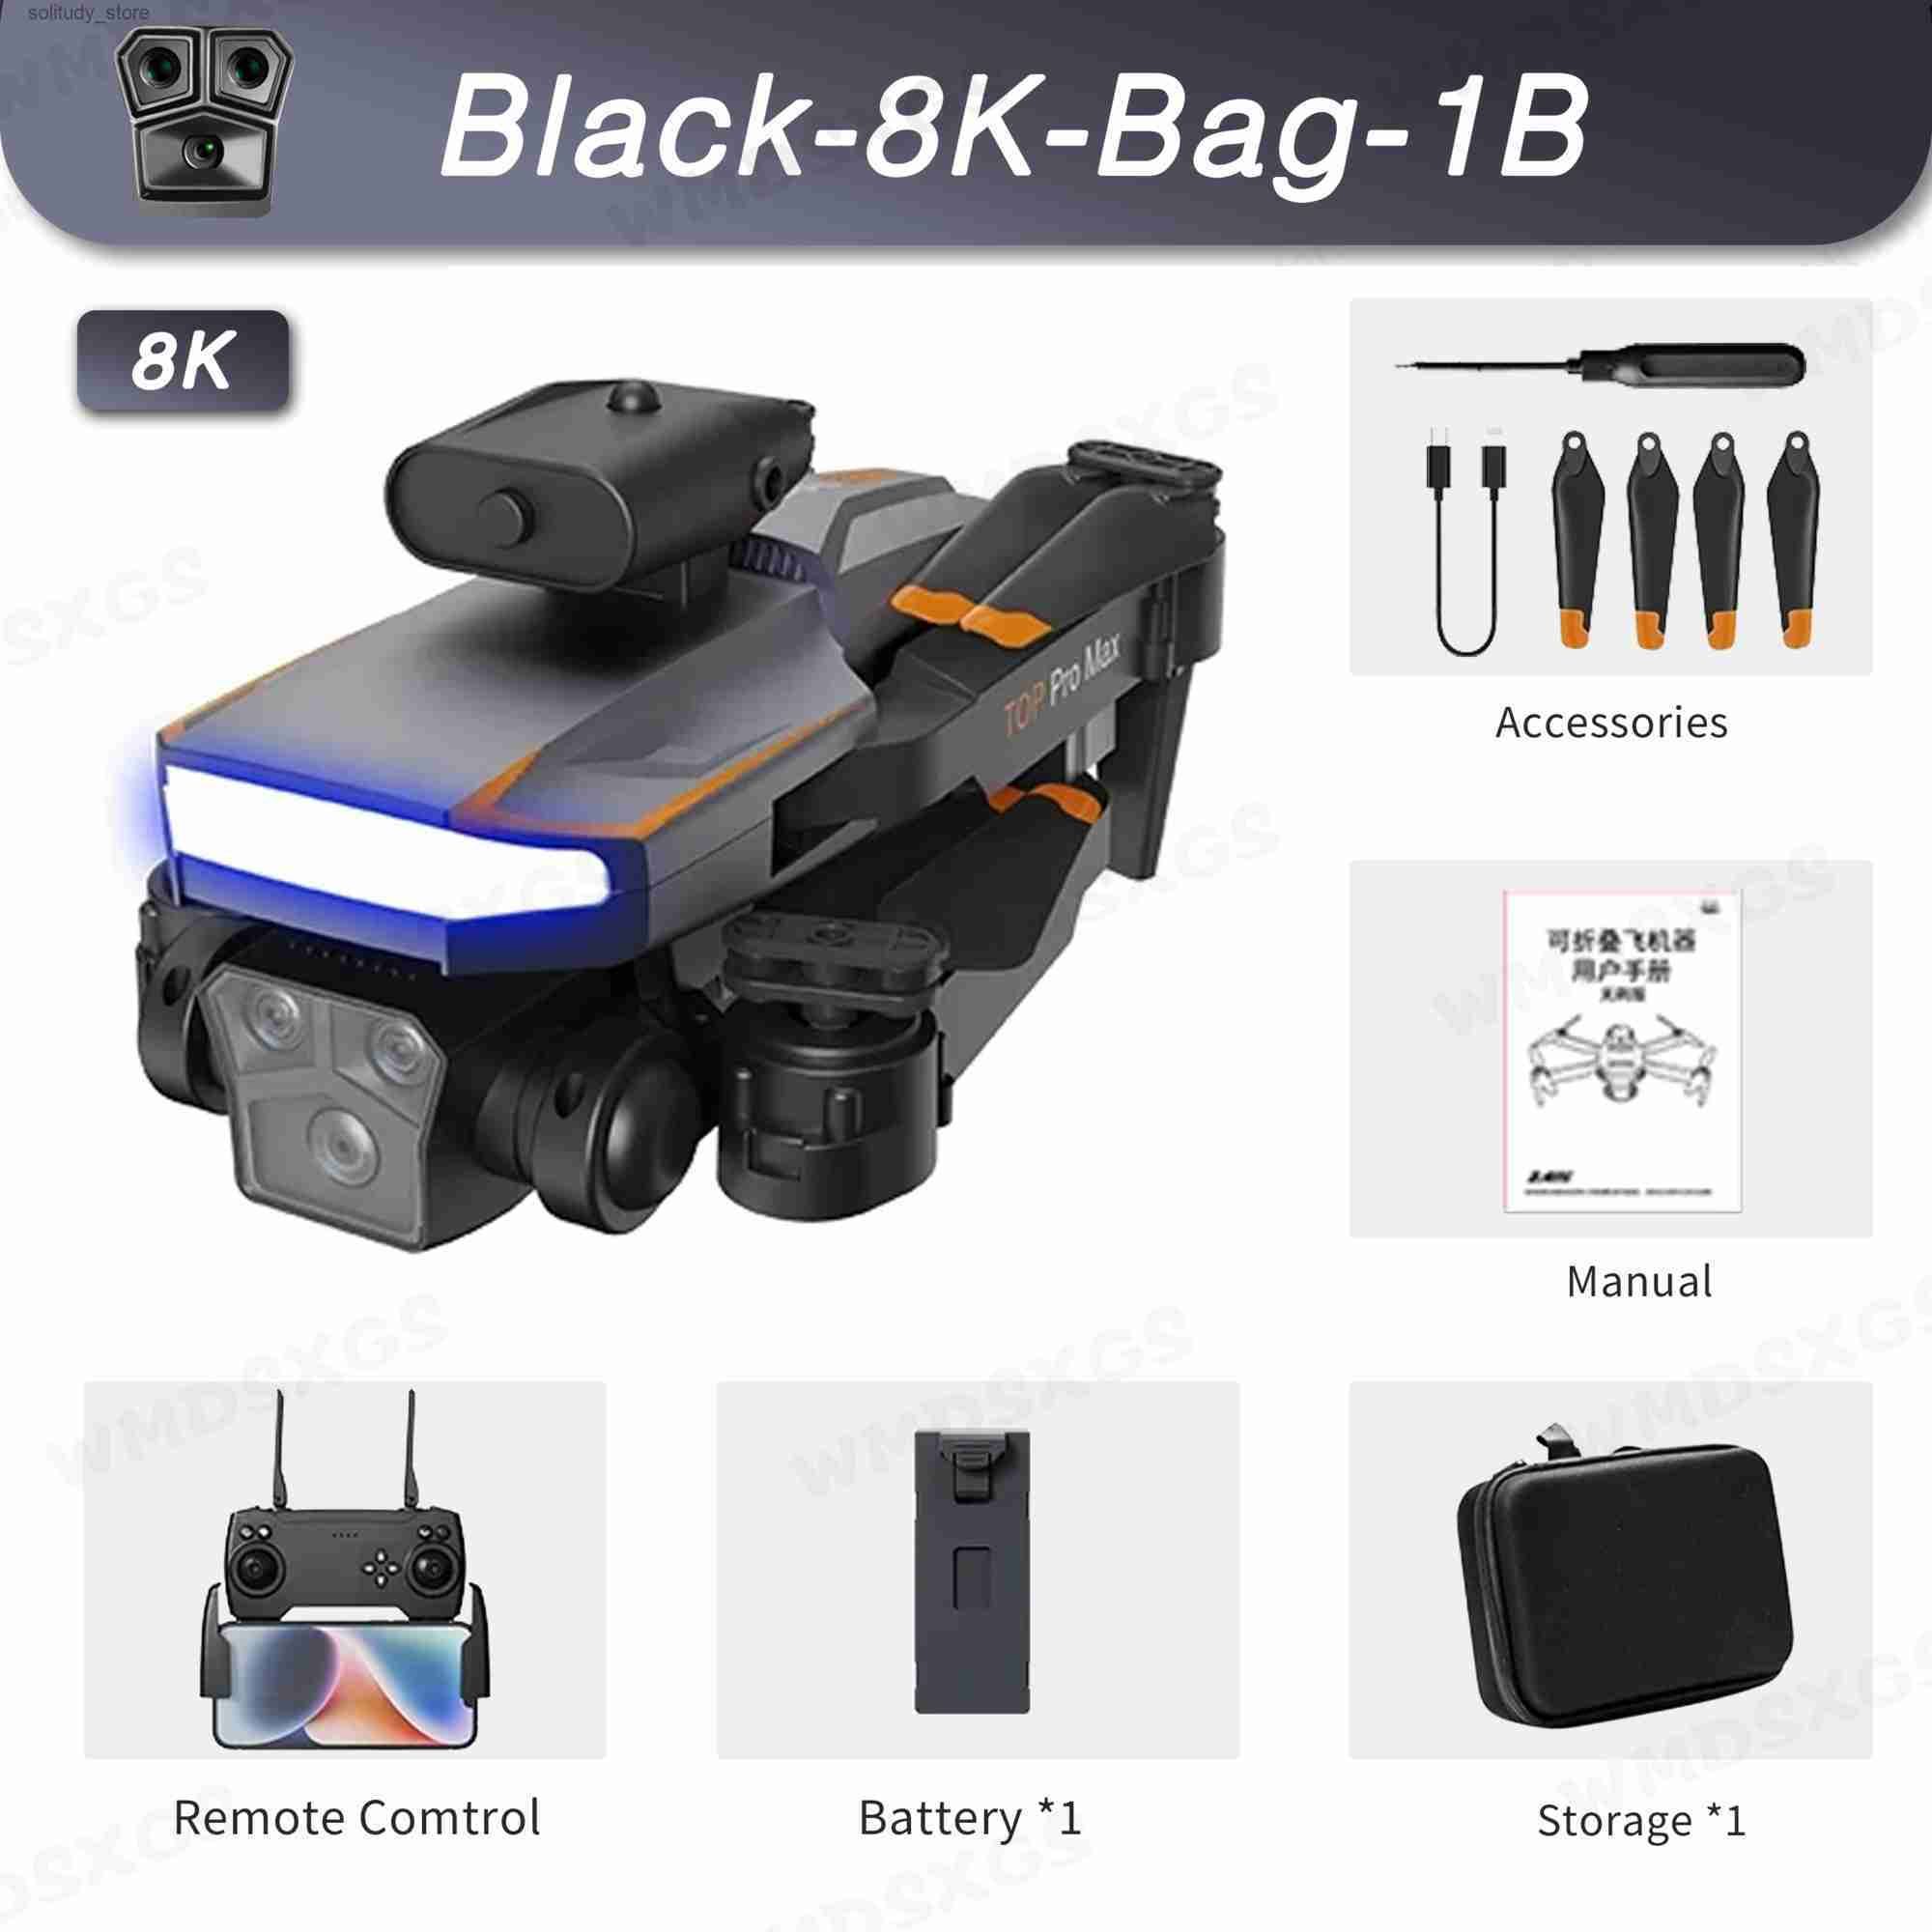 Black-8k-Bag-1B